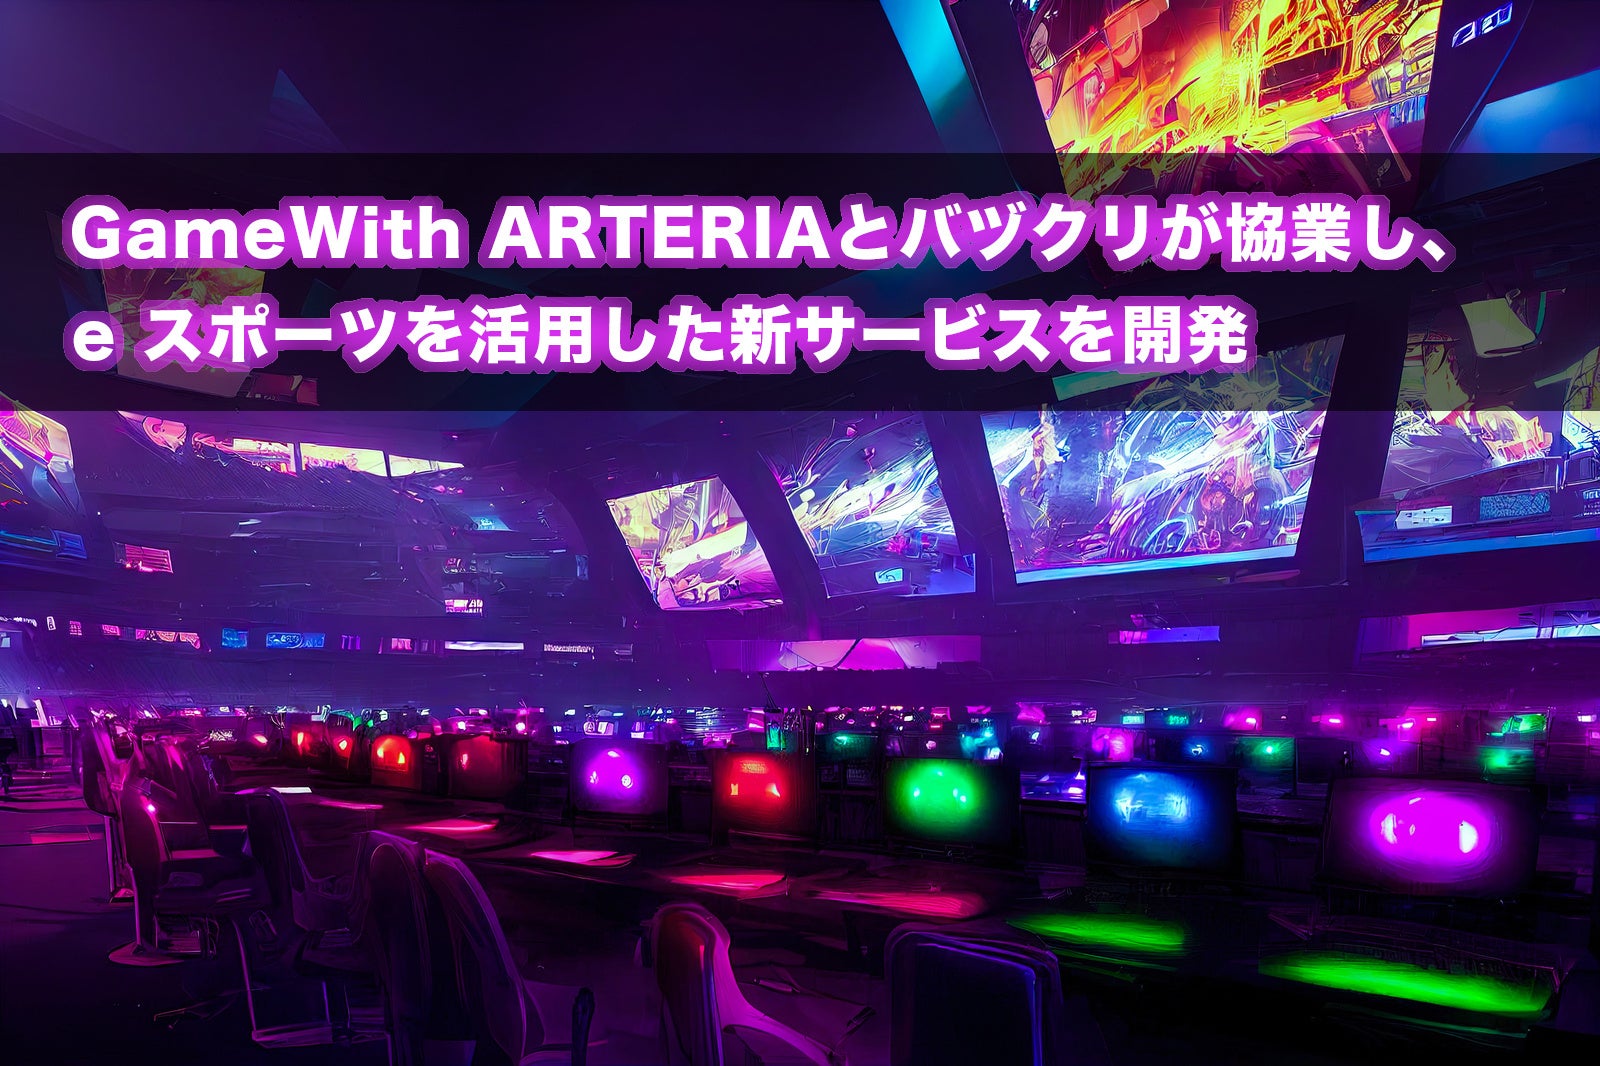 GameWith ARTERIAとバヅクリが協業し、eスポーツを活用した新サービスを開発